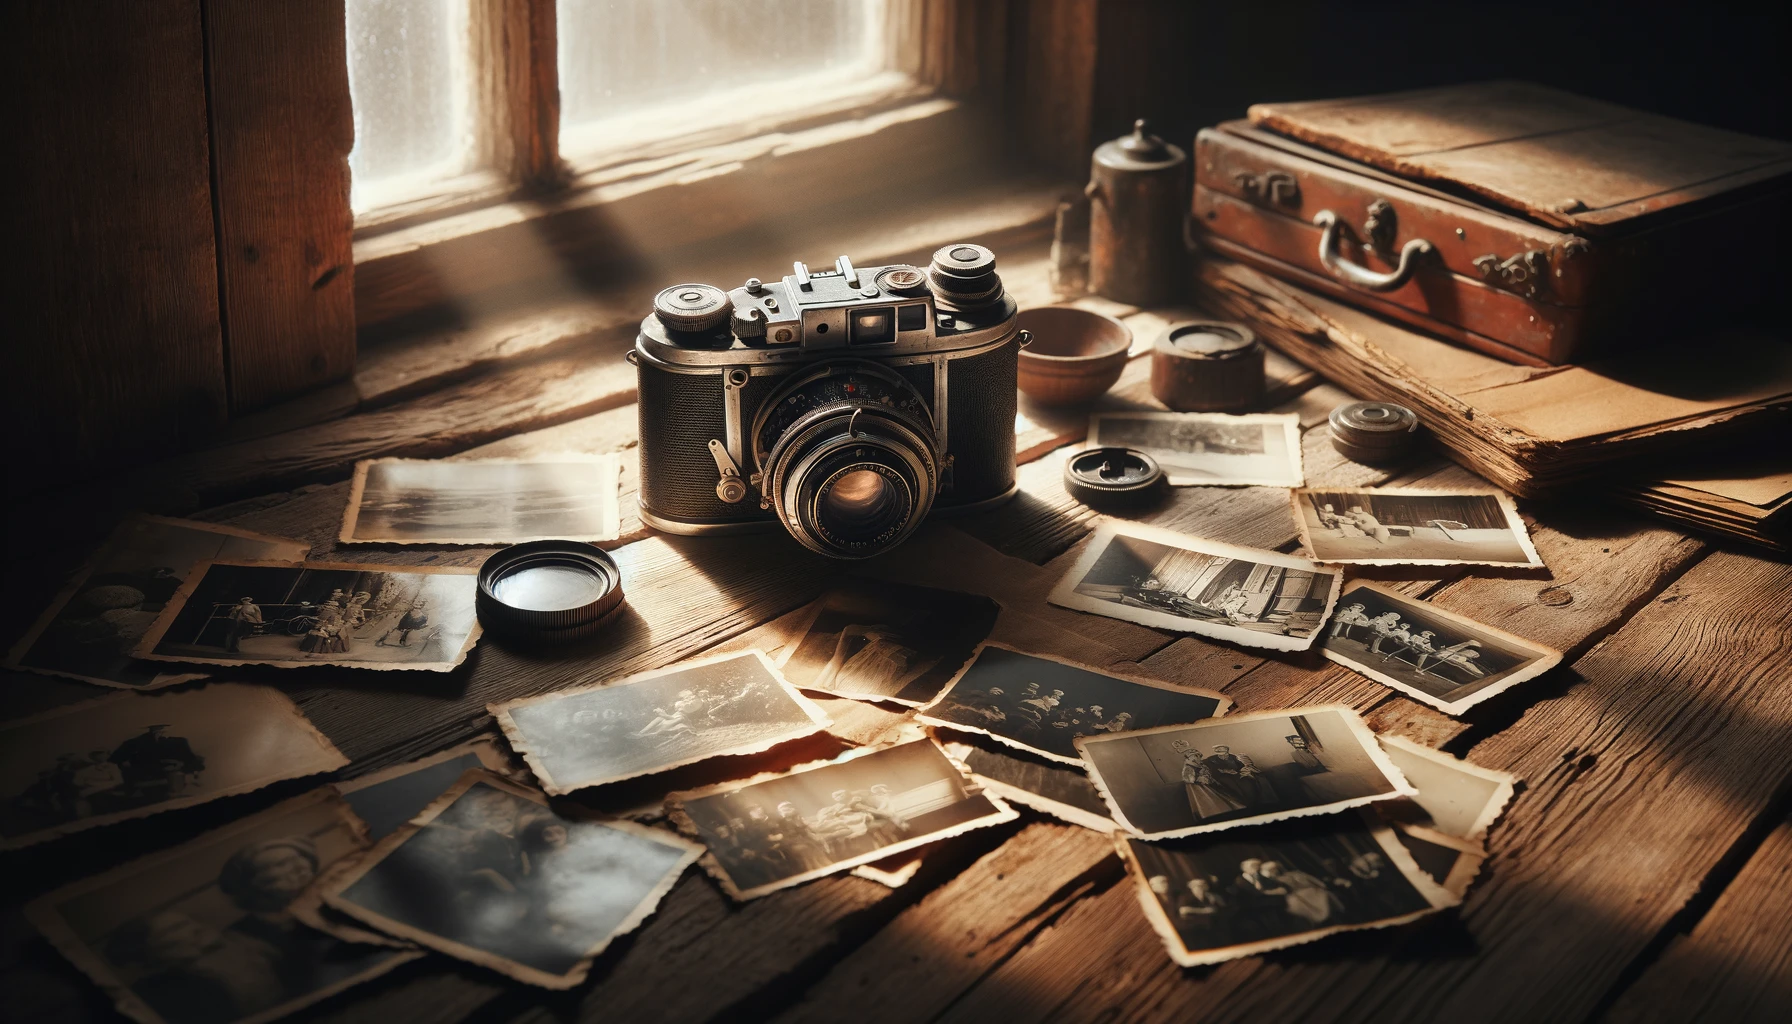 Illustratsioon, mis kujutab vintage kaamerat vanal puidust laual koos laiali puistatud must-valgete fotodega, on valmis. See stseen rõhutab fotograafia ajatut võlu ja võimet jäädvustada elu mälestusväärseid hetki.